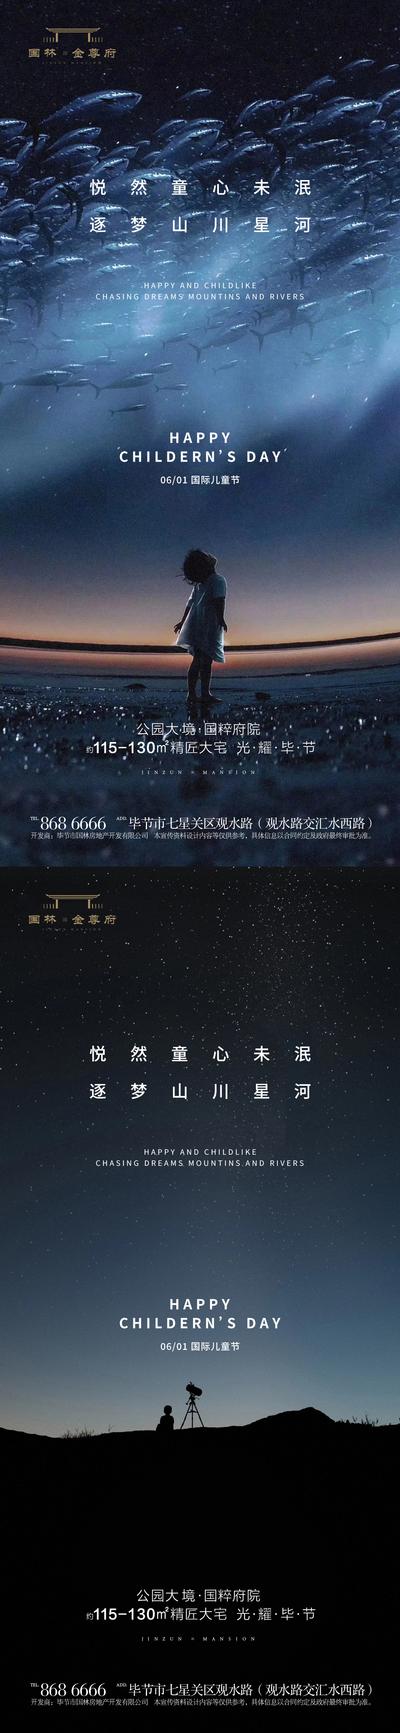 【南门网】广告 海报 地产 儿童节 星空 系列 梦想 大气